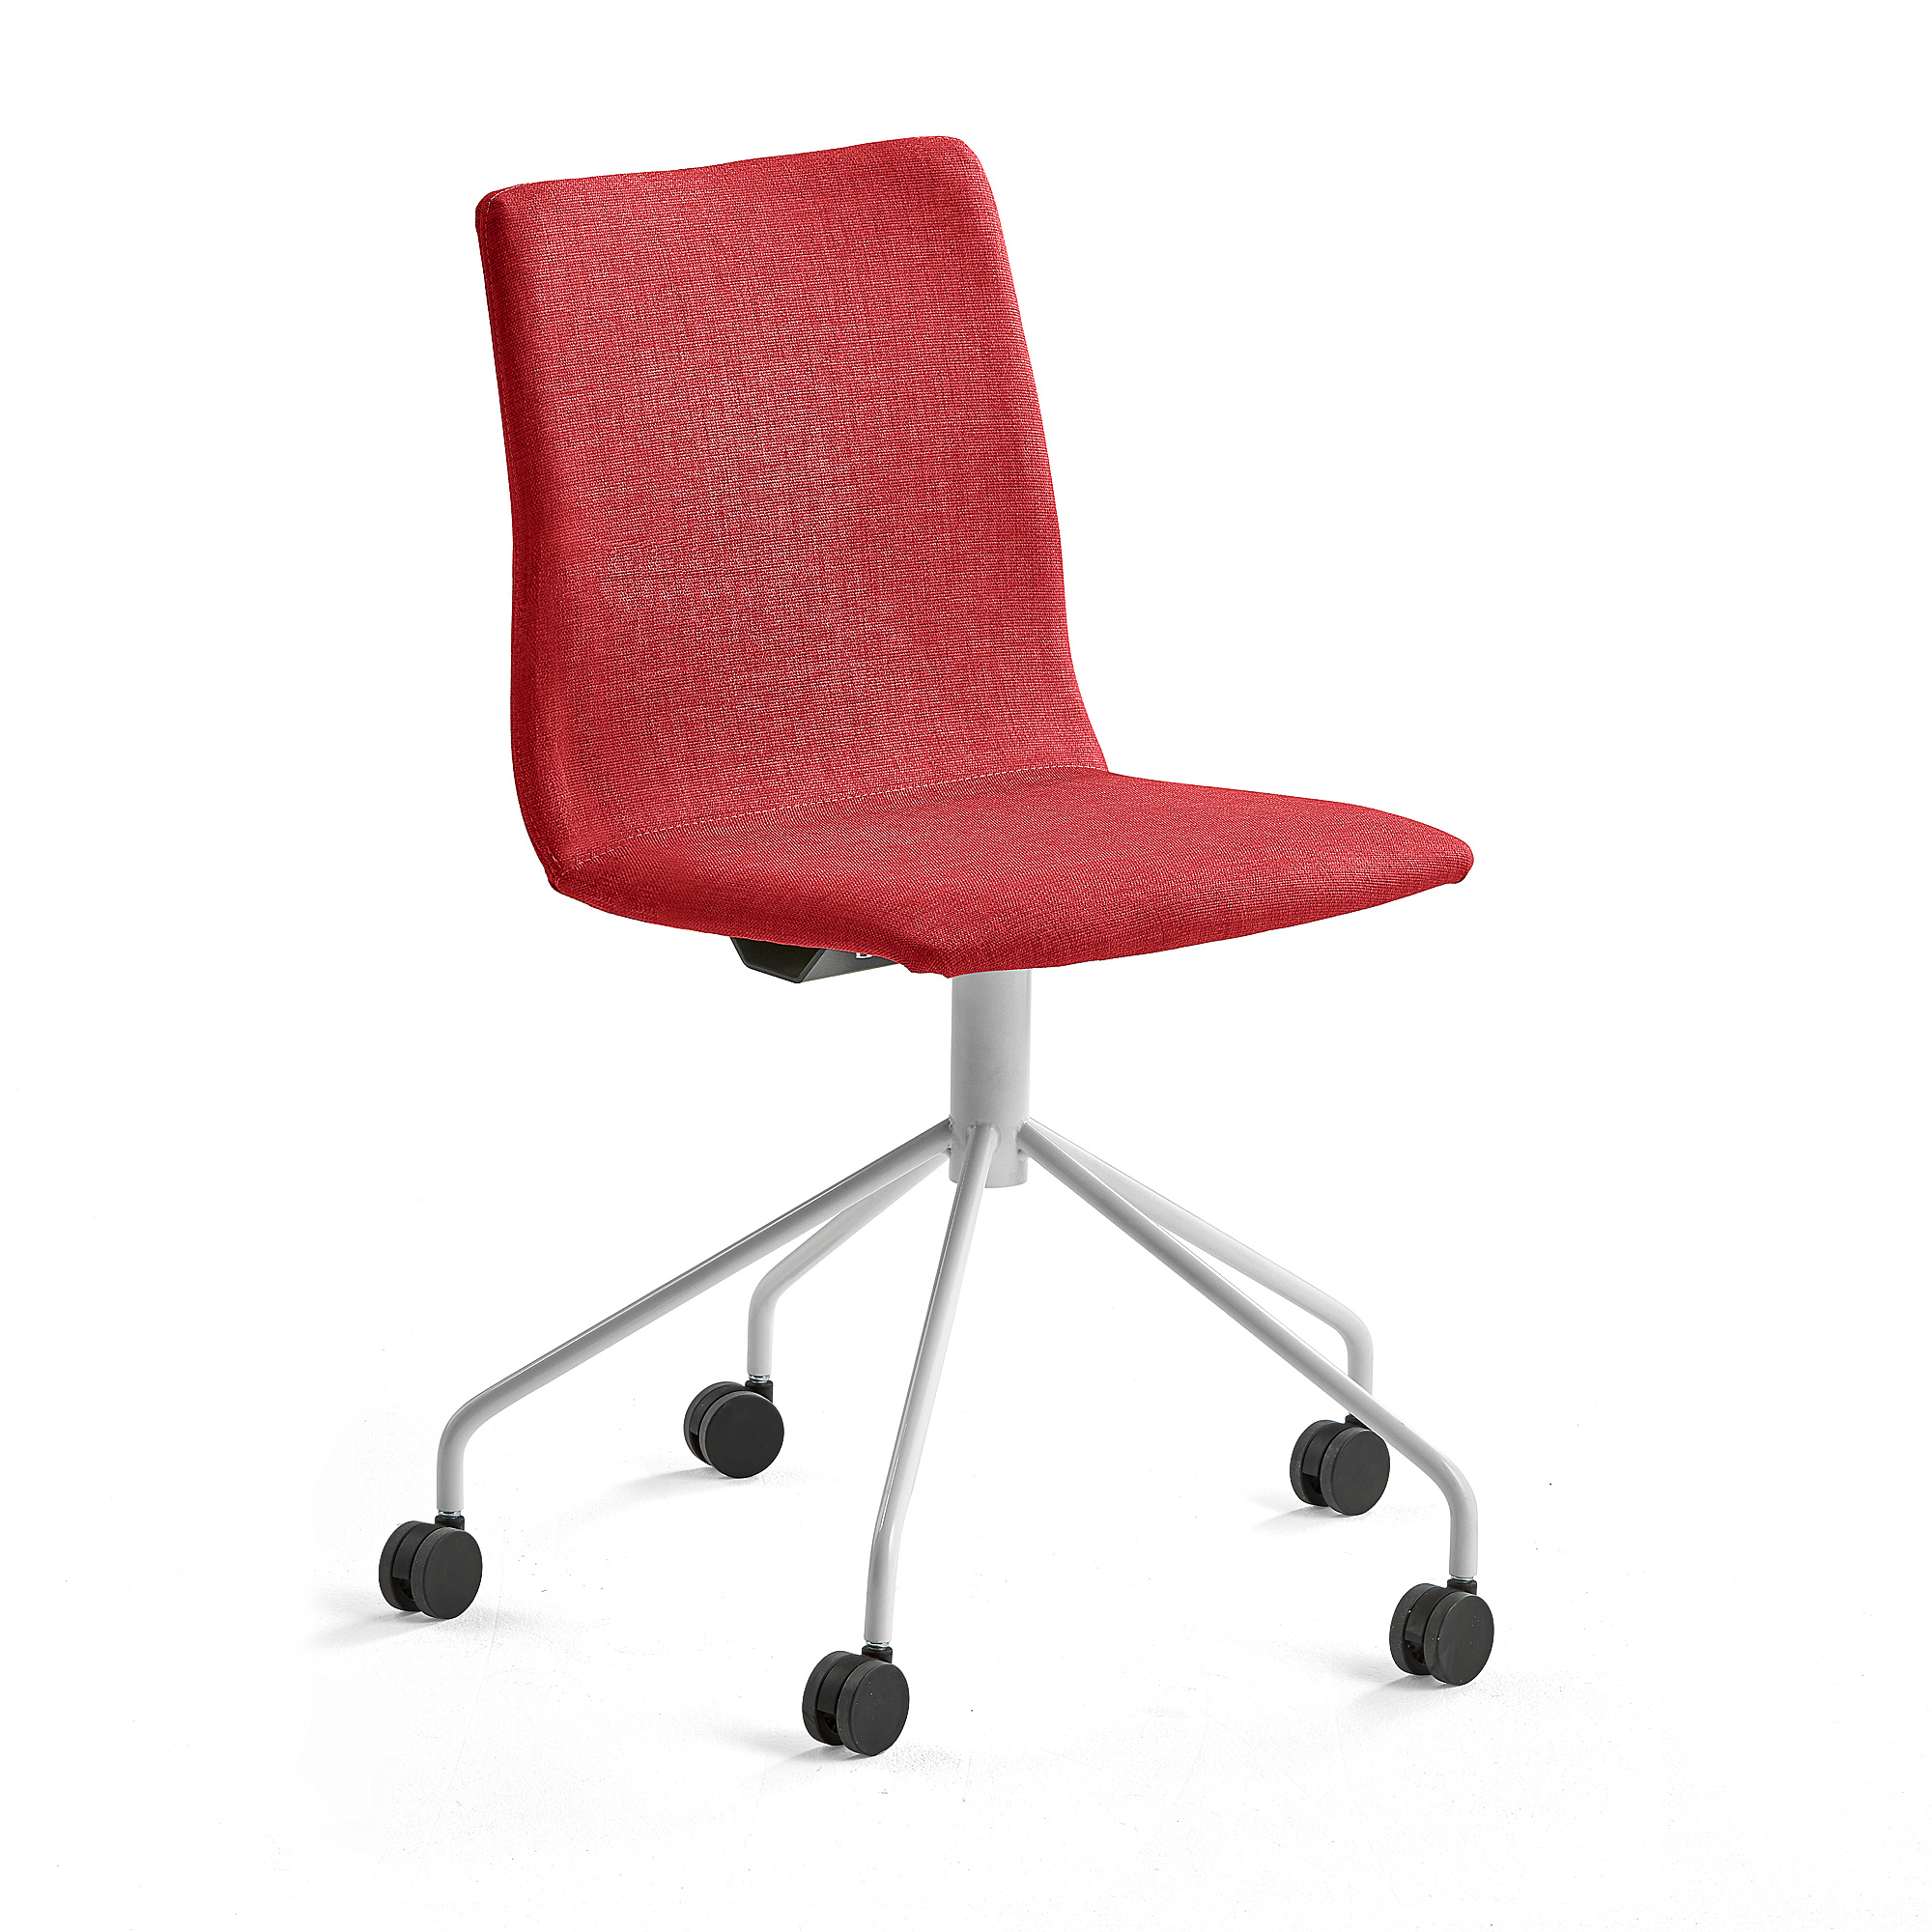 Konferenčná stolička OTTAWA, s kolieskami, červená, biela